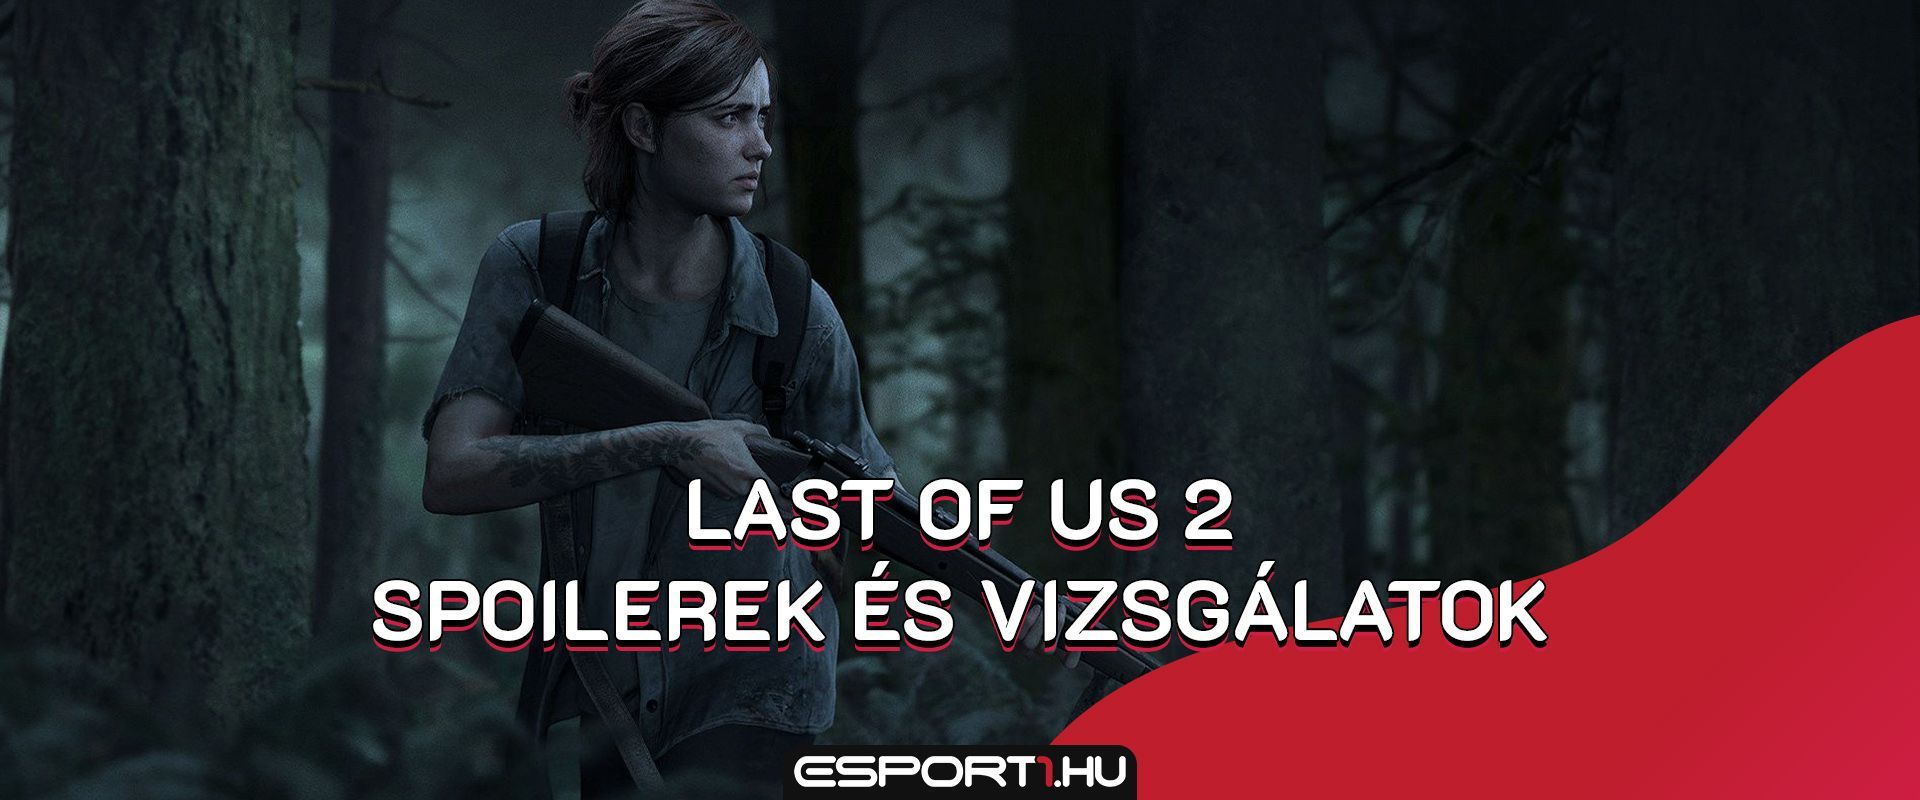 Megvannak a The Last of Us 2 spoileres jeleneteinek szivárogtatói